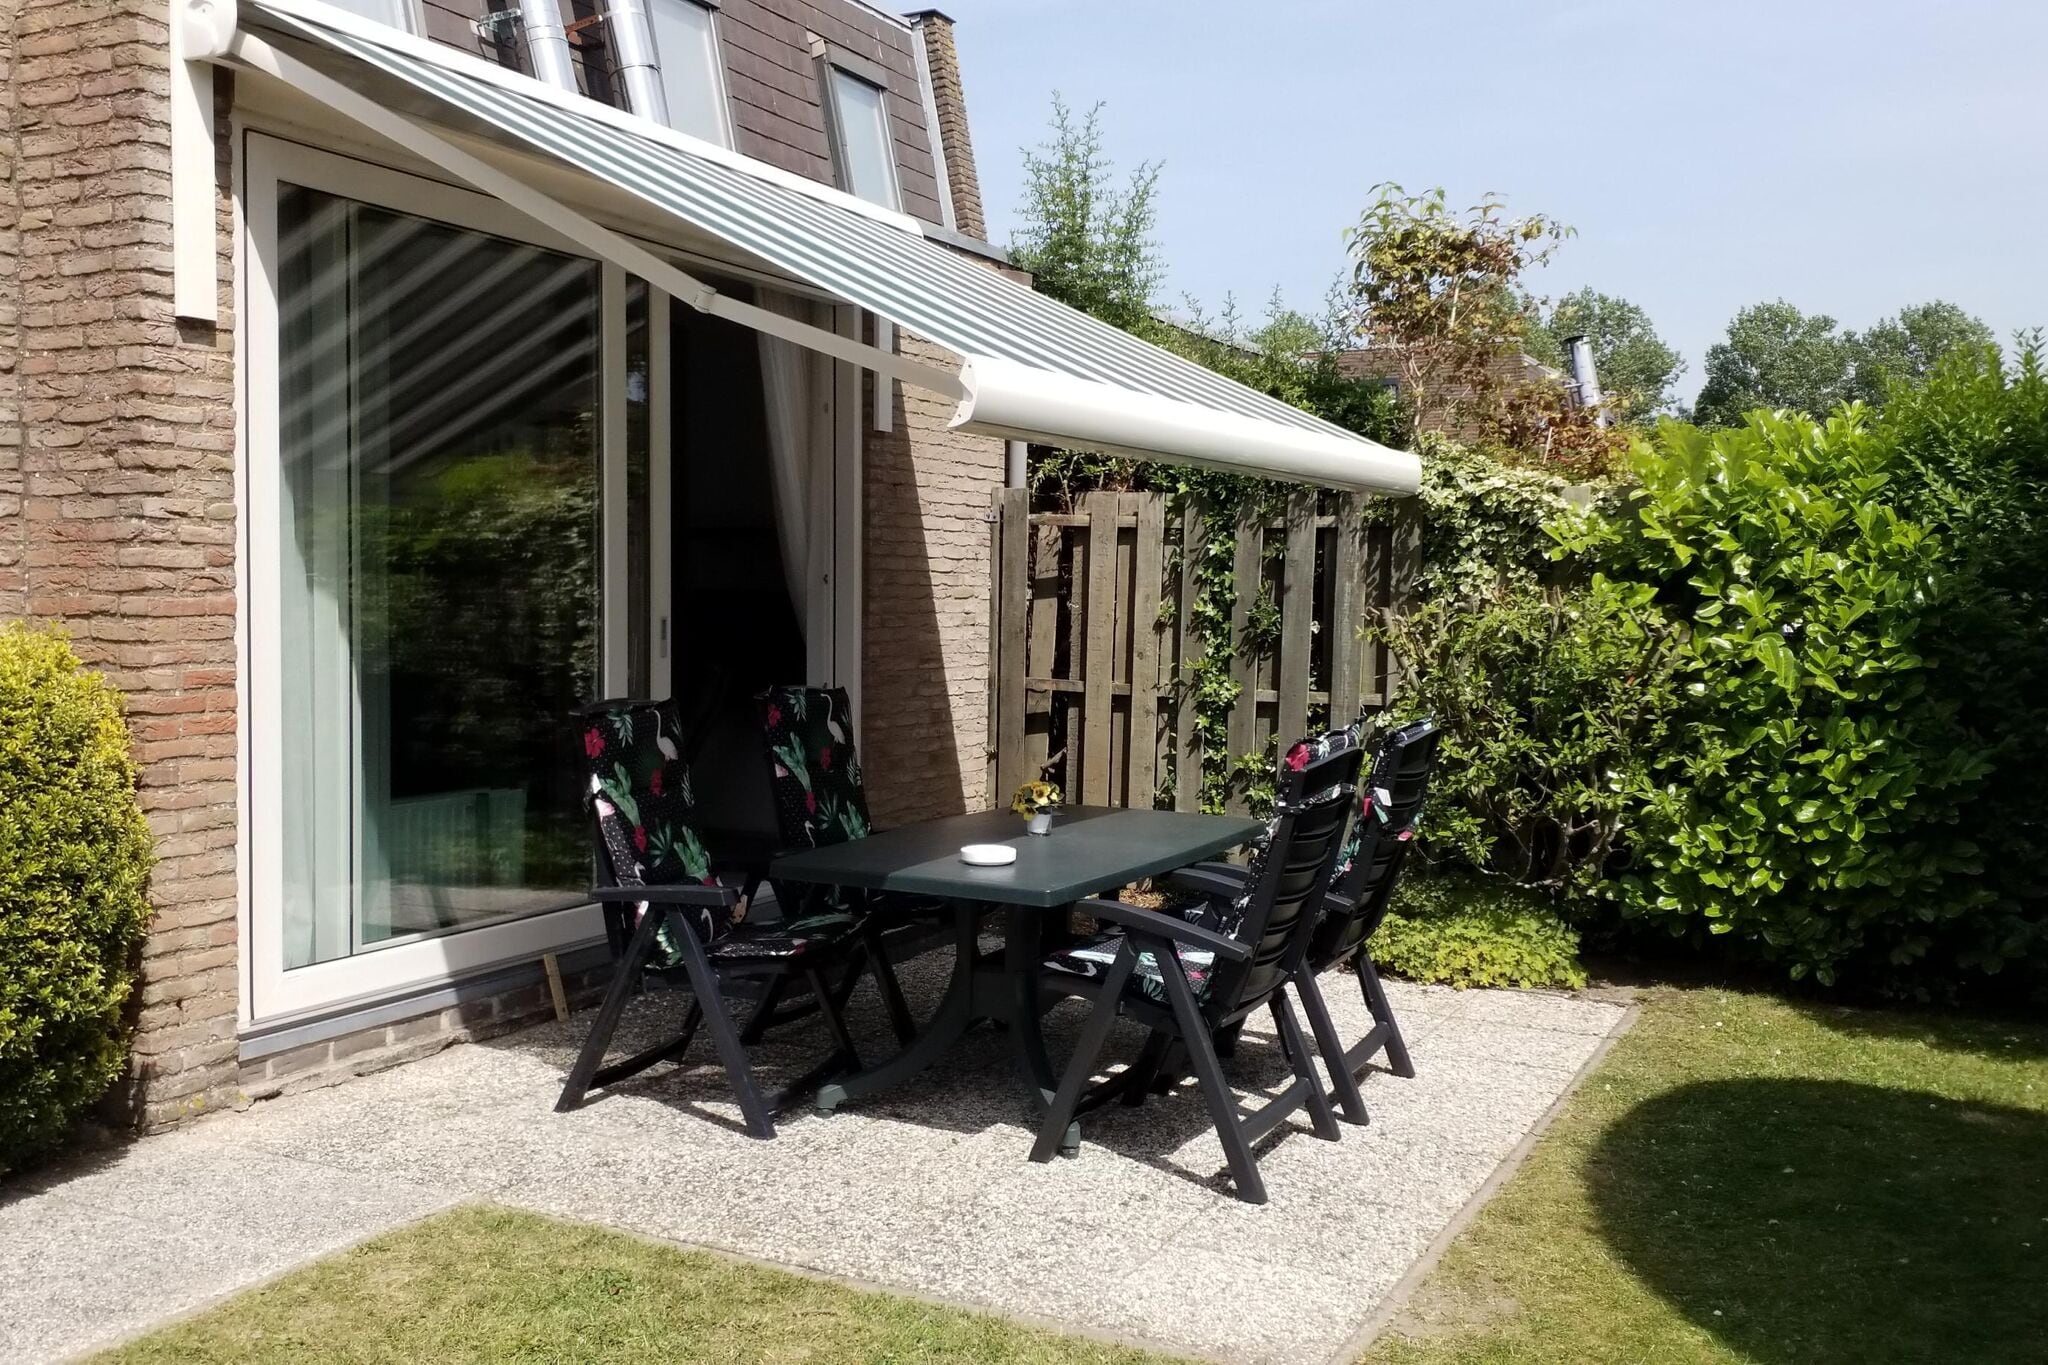 Heerlijk vakantiehuis in Nieuwvliet met een grote tuin en op loopafstand strand